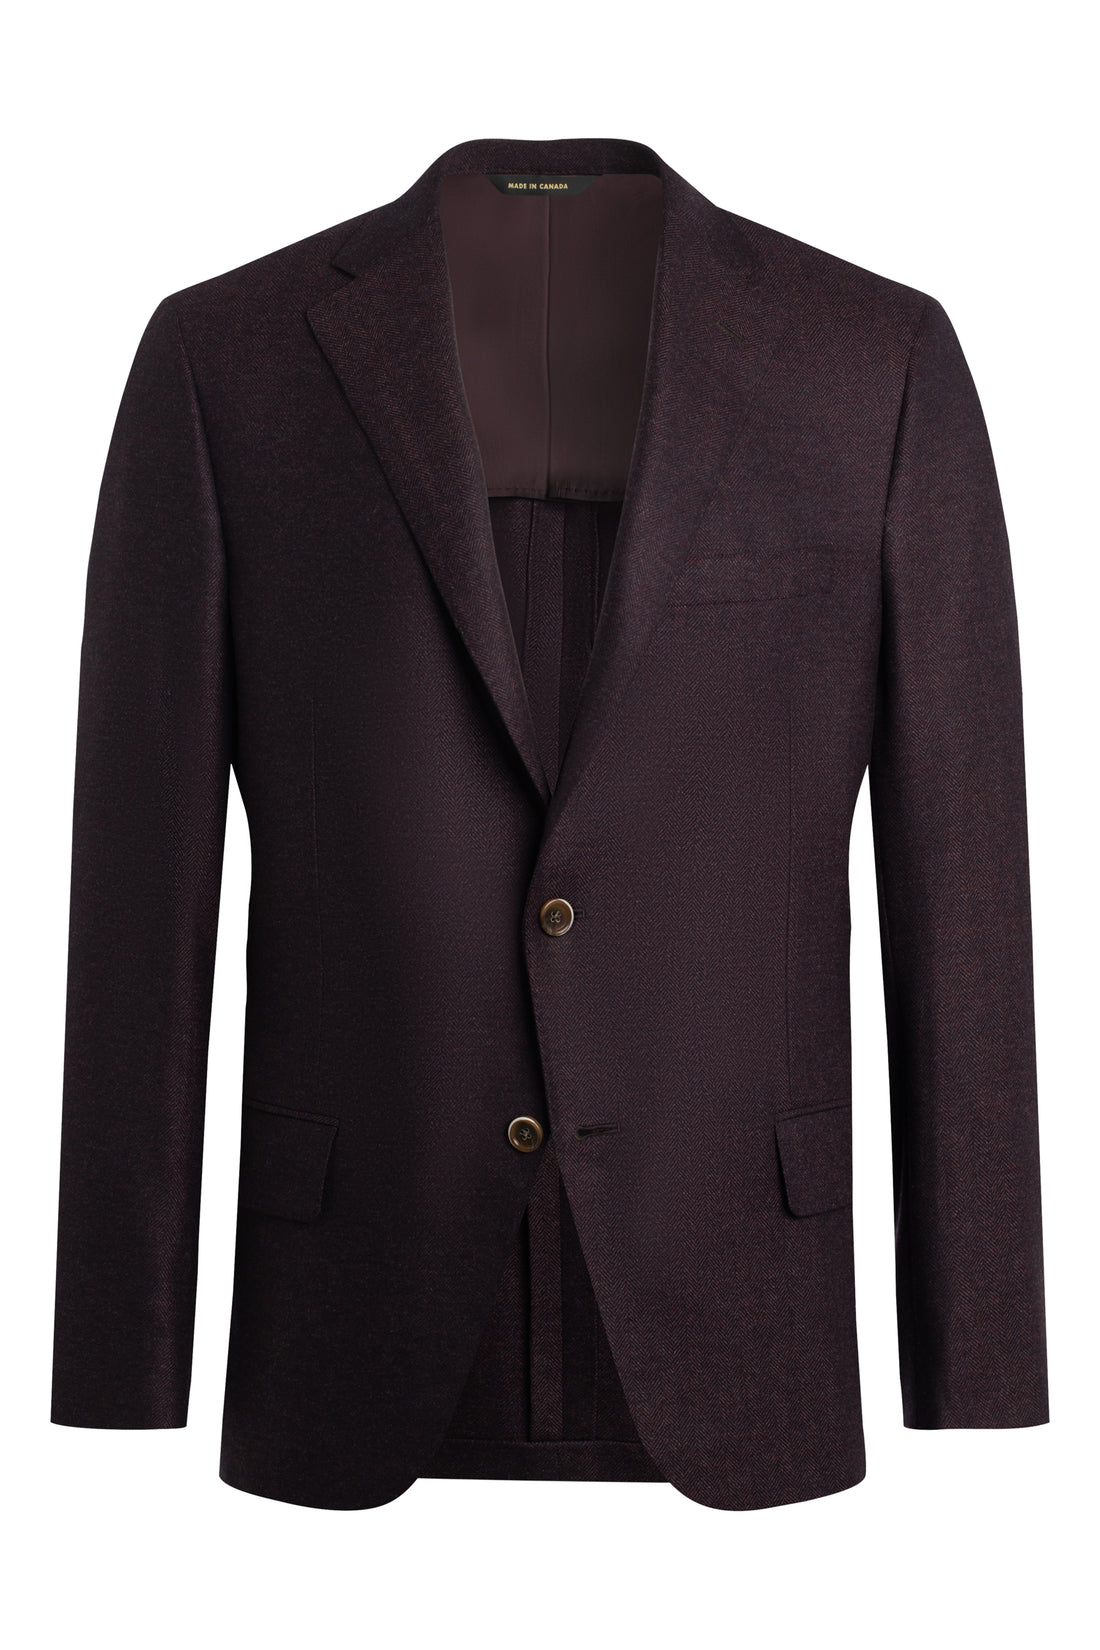 Burgundy Herringbone Wool Cashmere Jacket